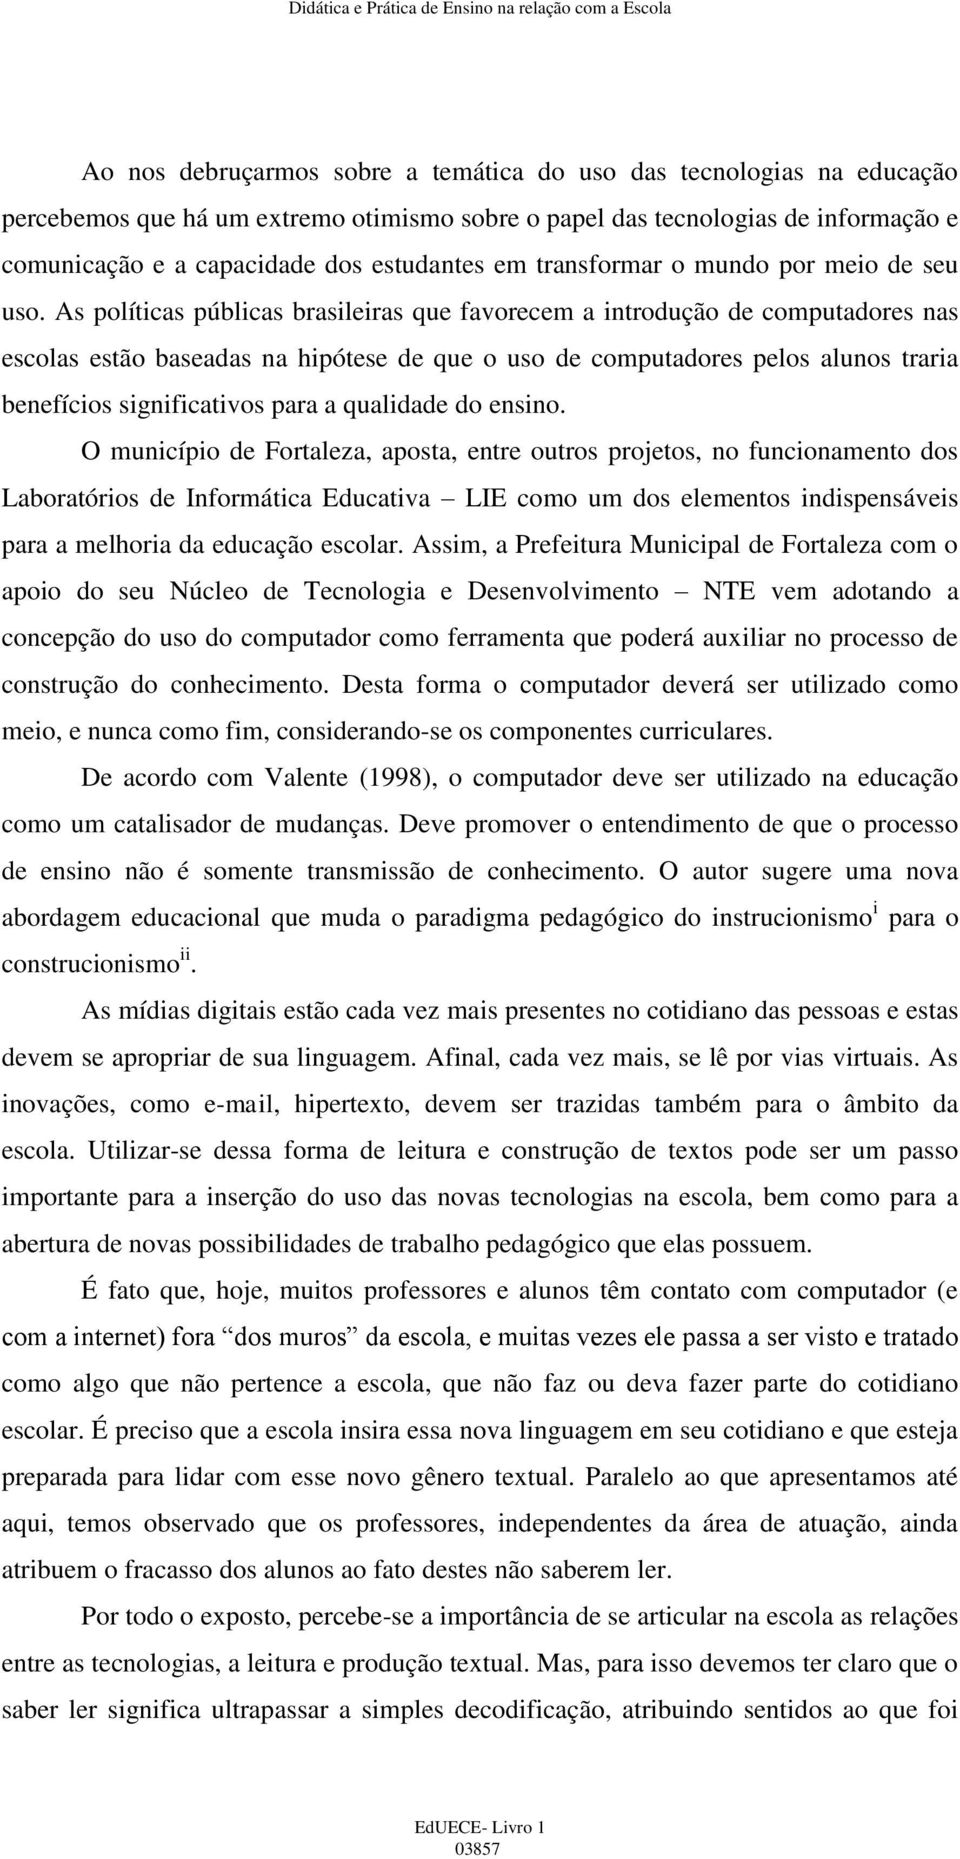 As políticas públicas brasileiras que favorecem a introdução de computadores nas escolas estão baseadas na hipótese de que o uso de computadores pelos alunos traria benefícios significativos para a